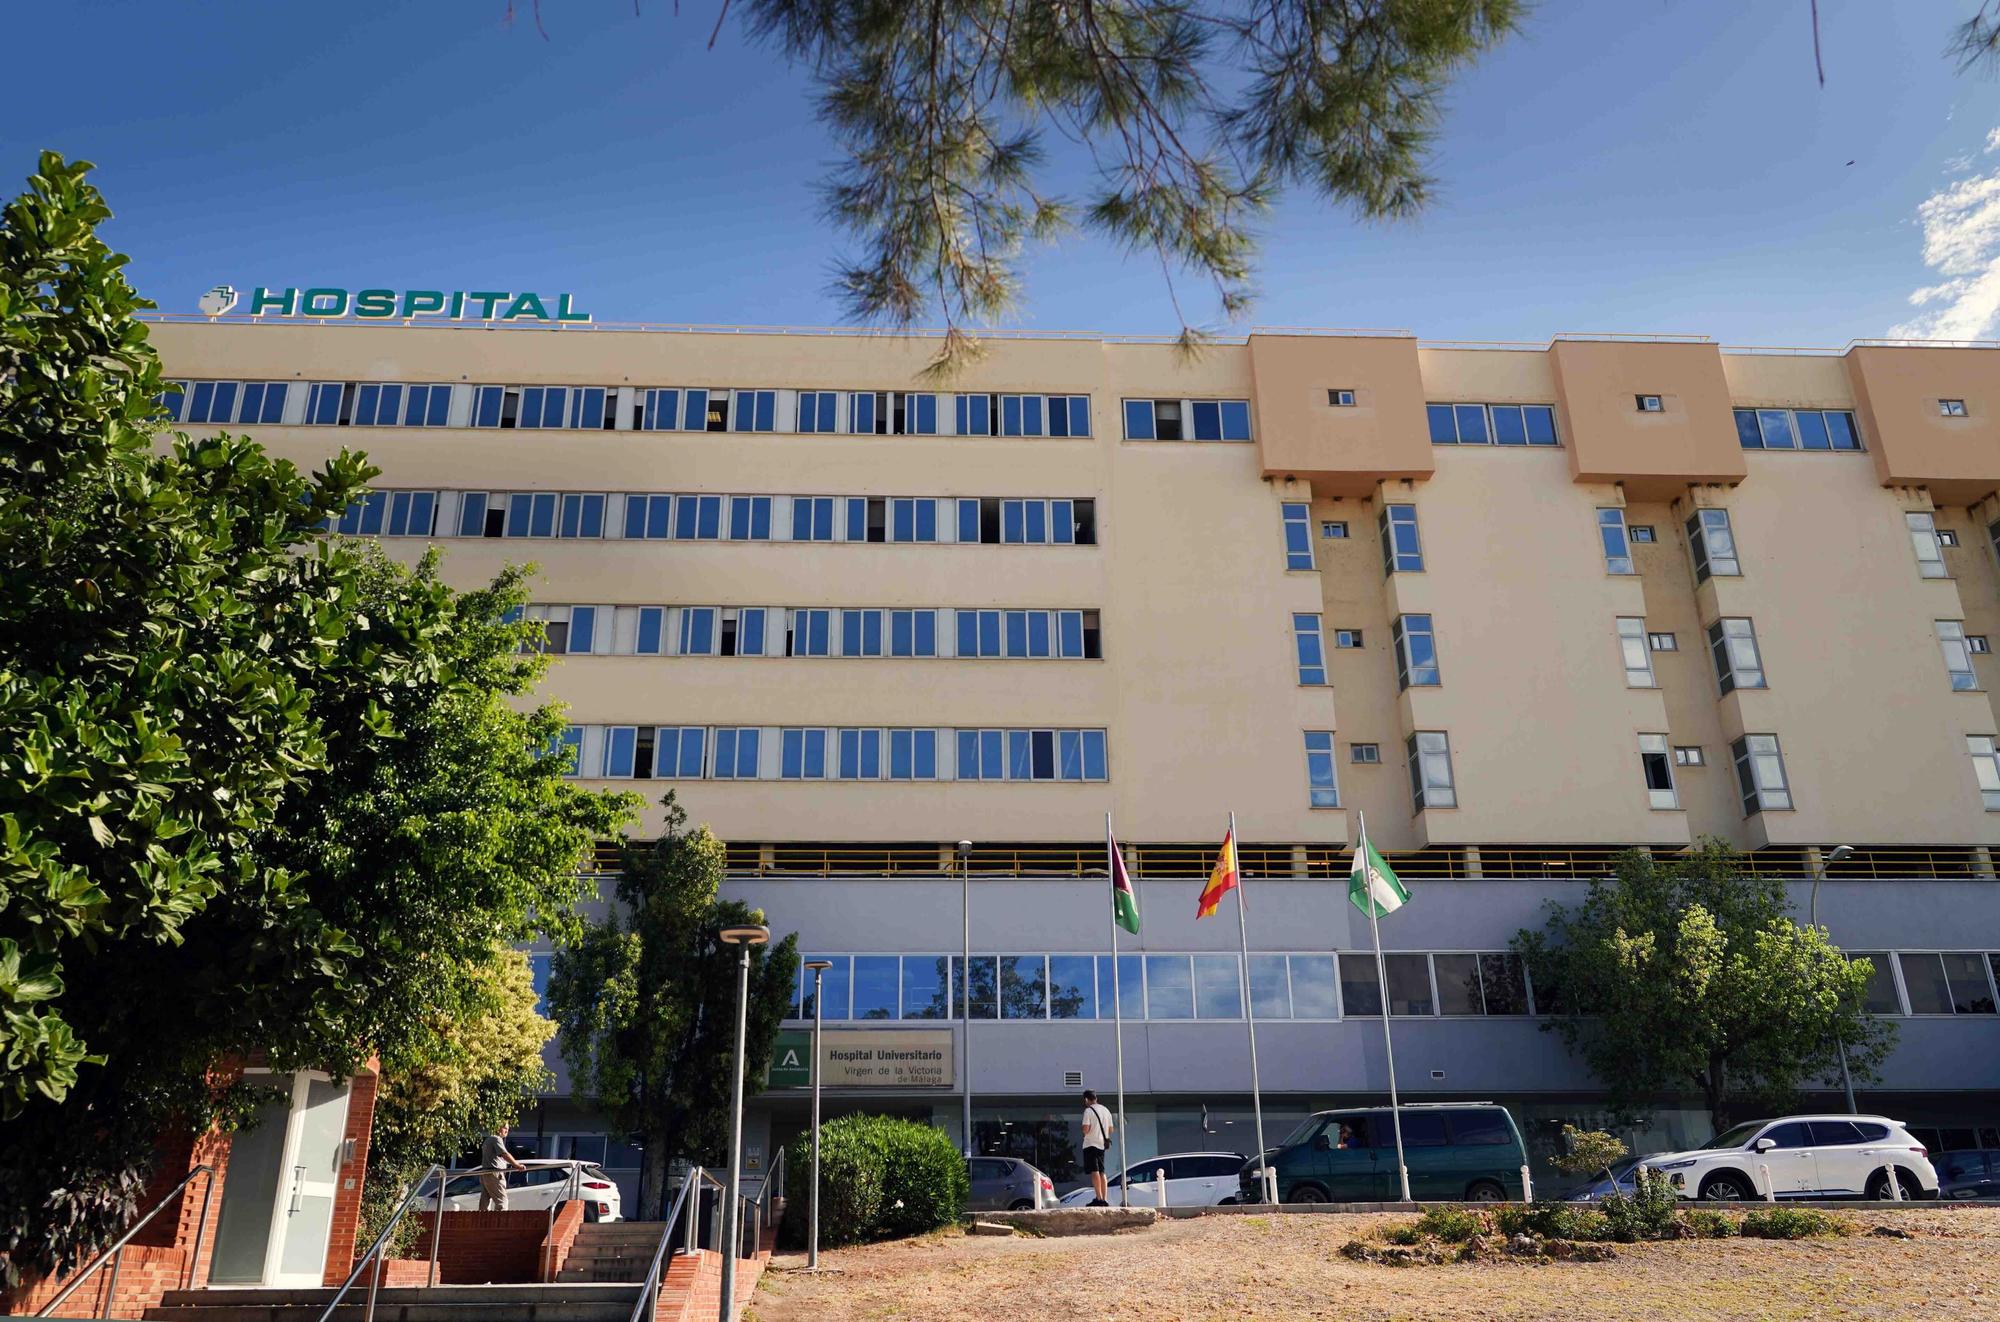 Reportaje por el  35 Aniversario del Hospital Clínico Universitario, Virgen de la Victoria de Málaga.
